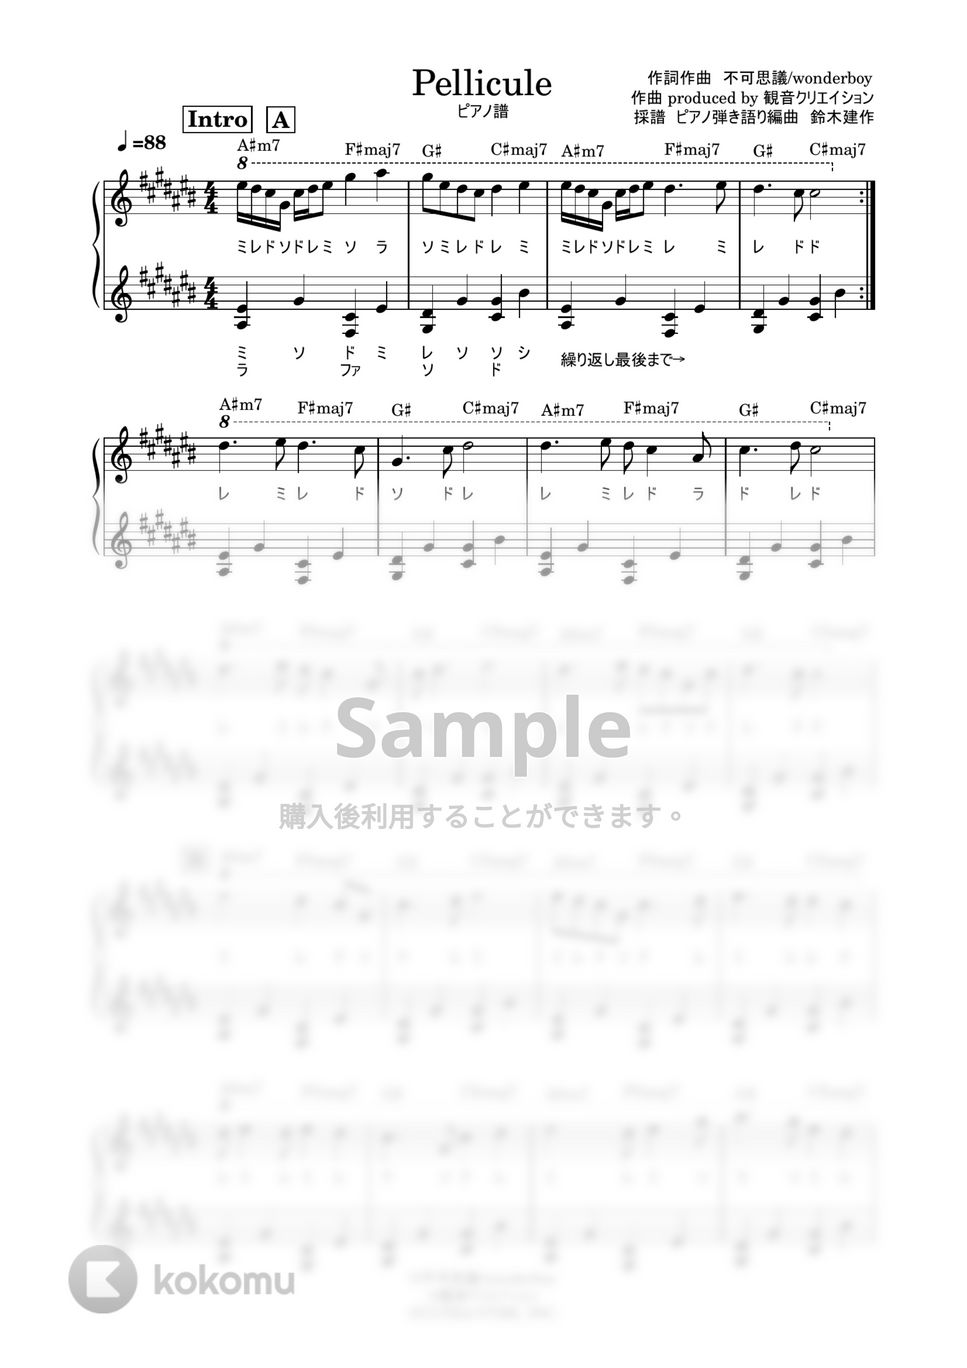 不可思議/wonderboy - Pellicule (ドレミ付ピアノ譜) by 鈴木建作